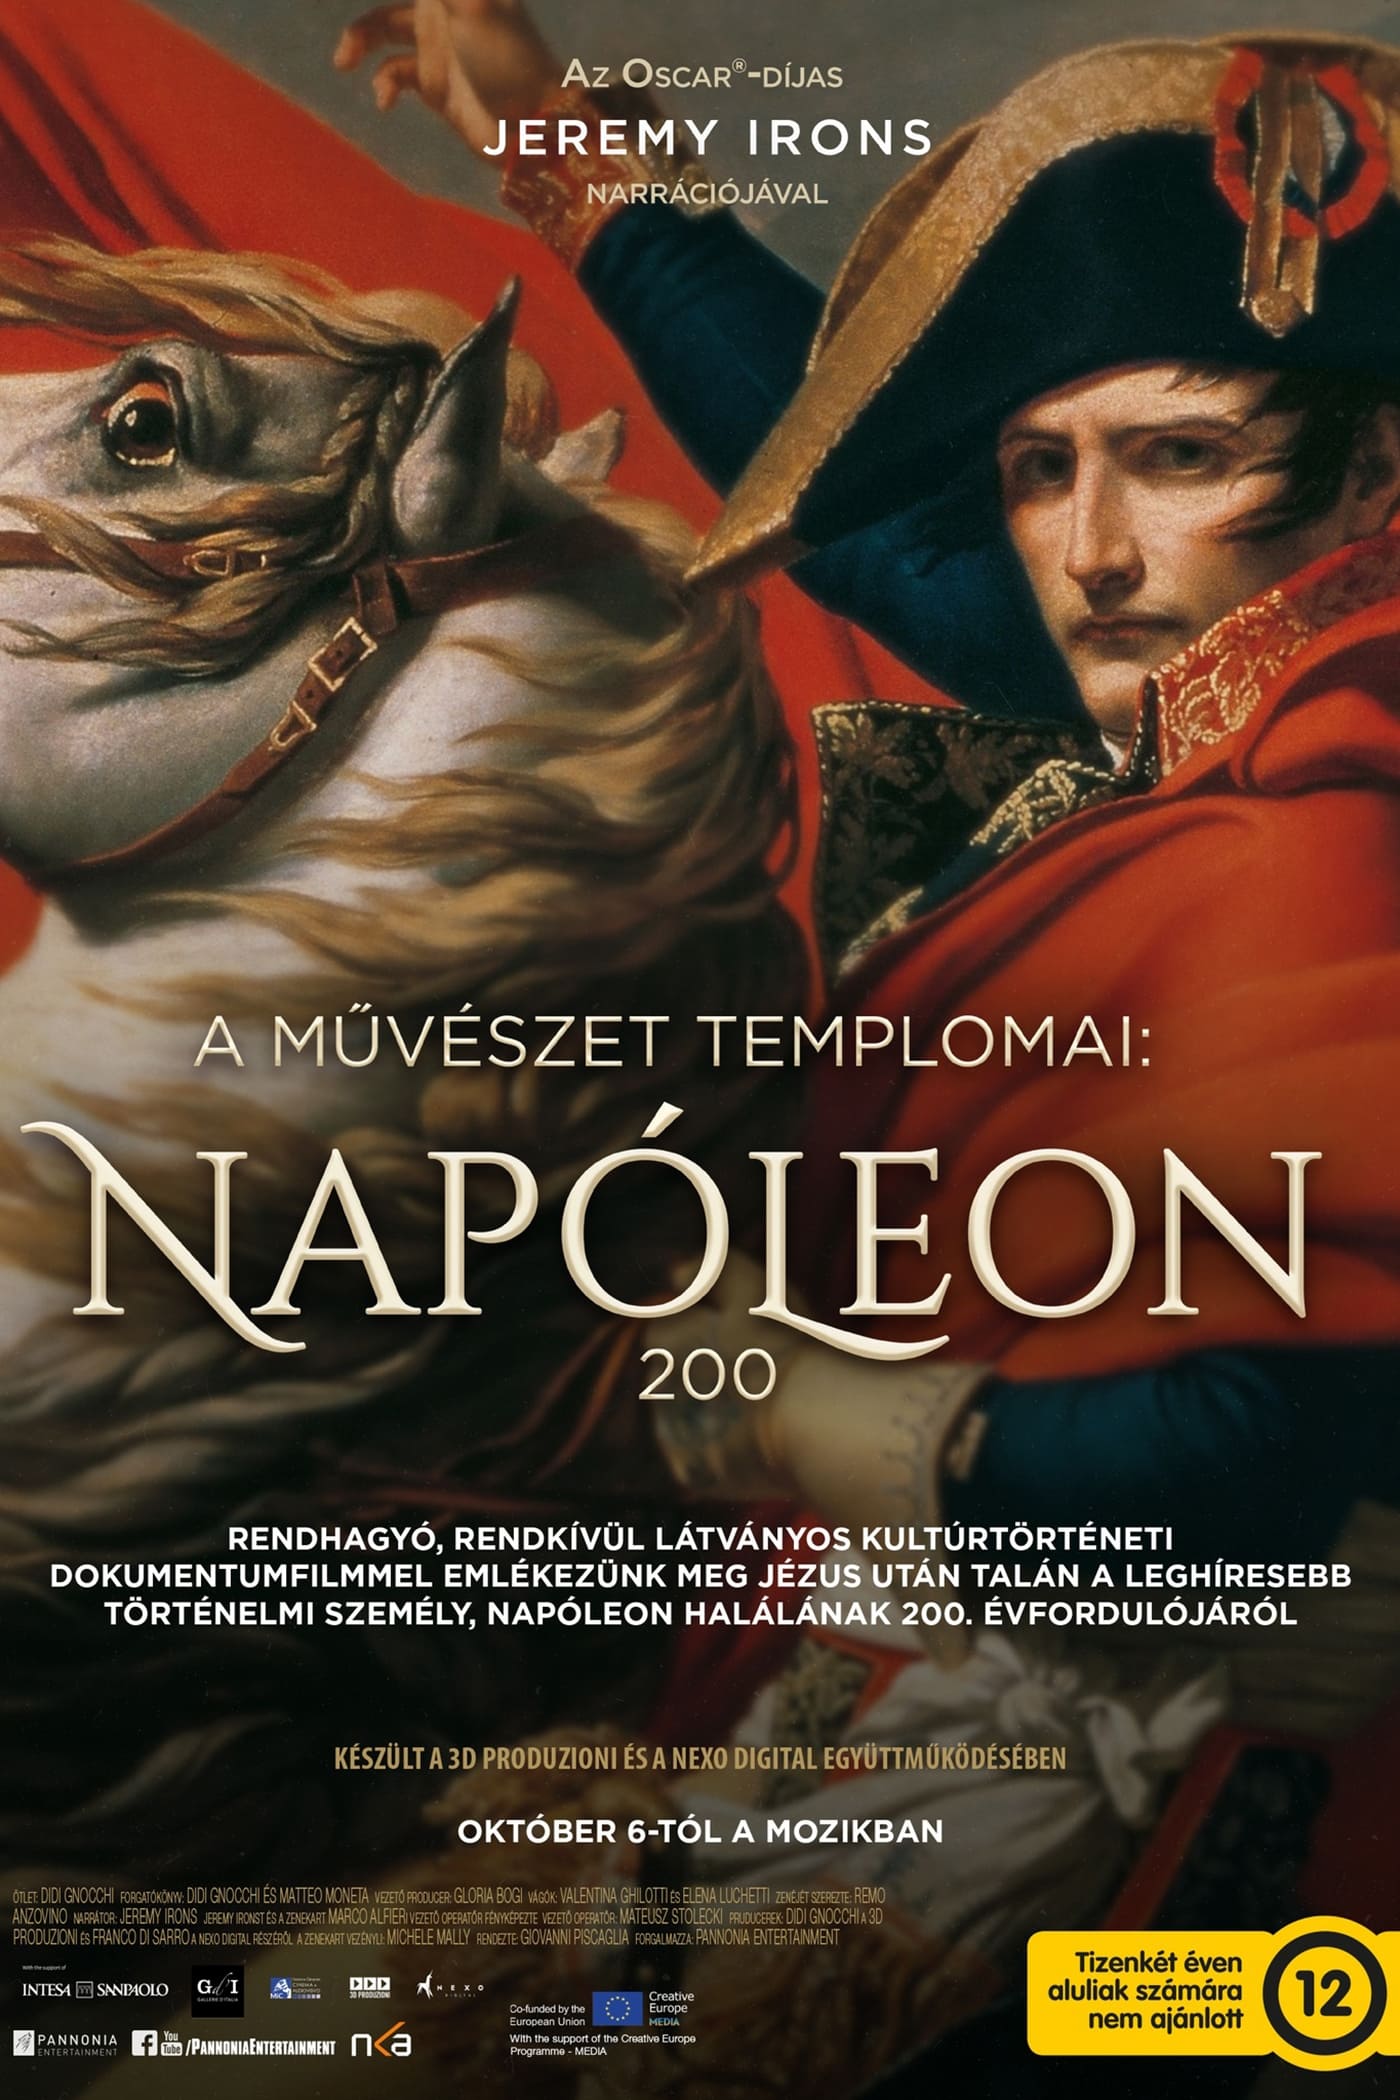 Napoleón, en el nombre del arte